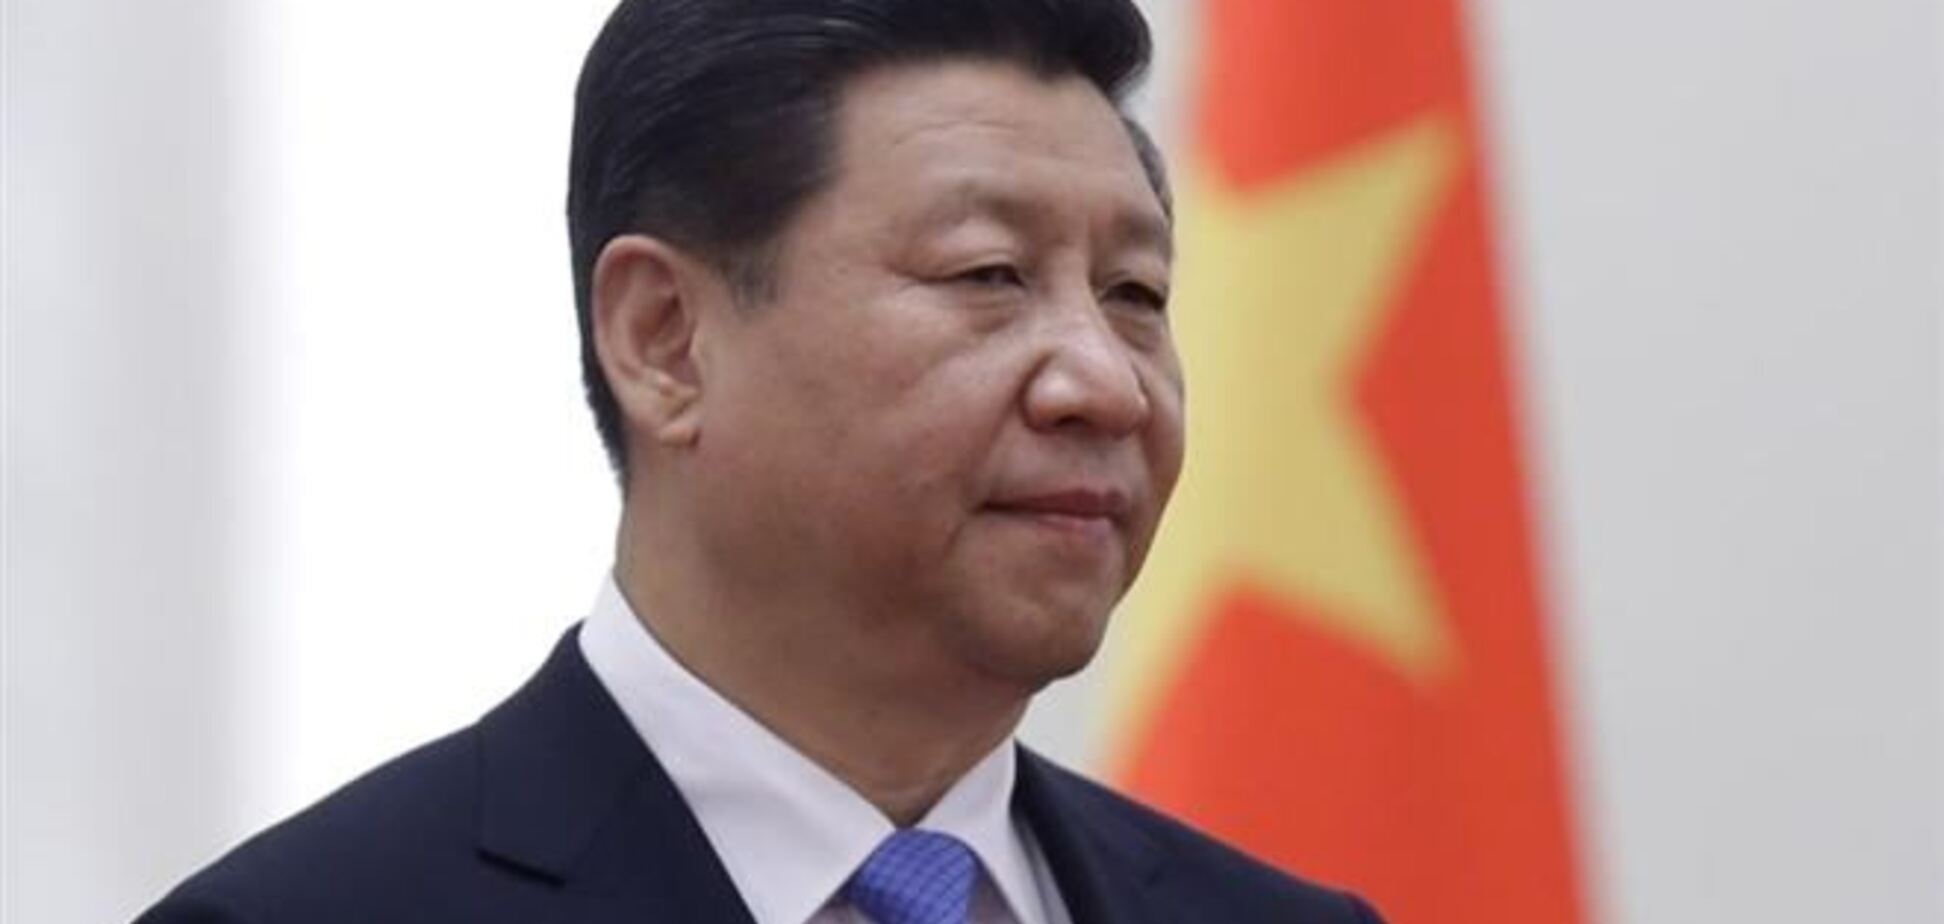 Лидер Китая о ситуации в Украине: все стороны должны проявлять хладнокровие и сдержанность